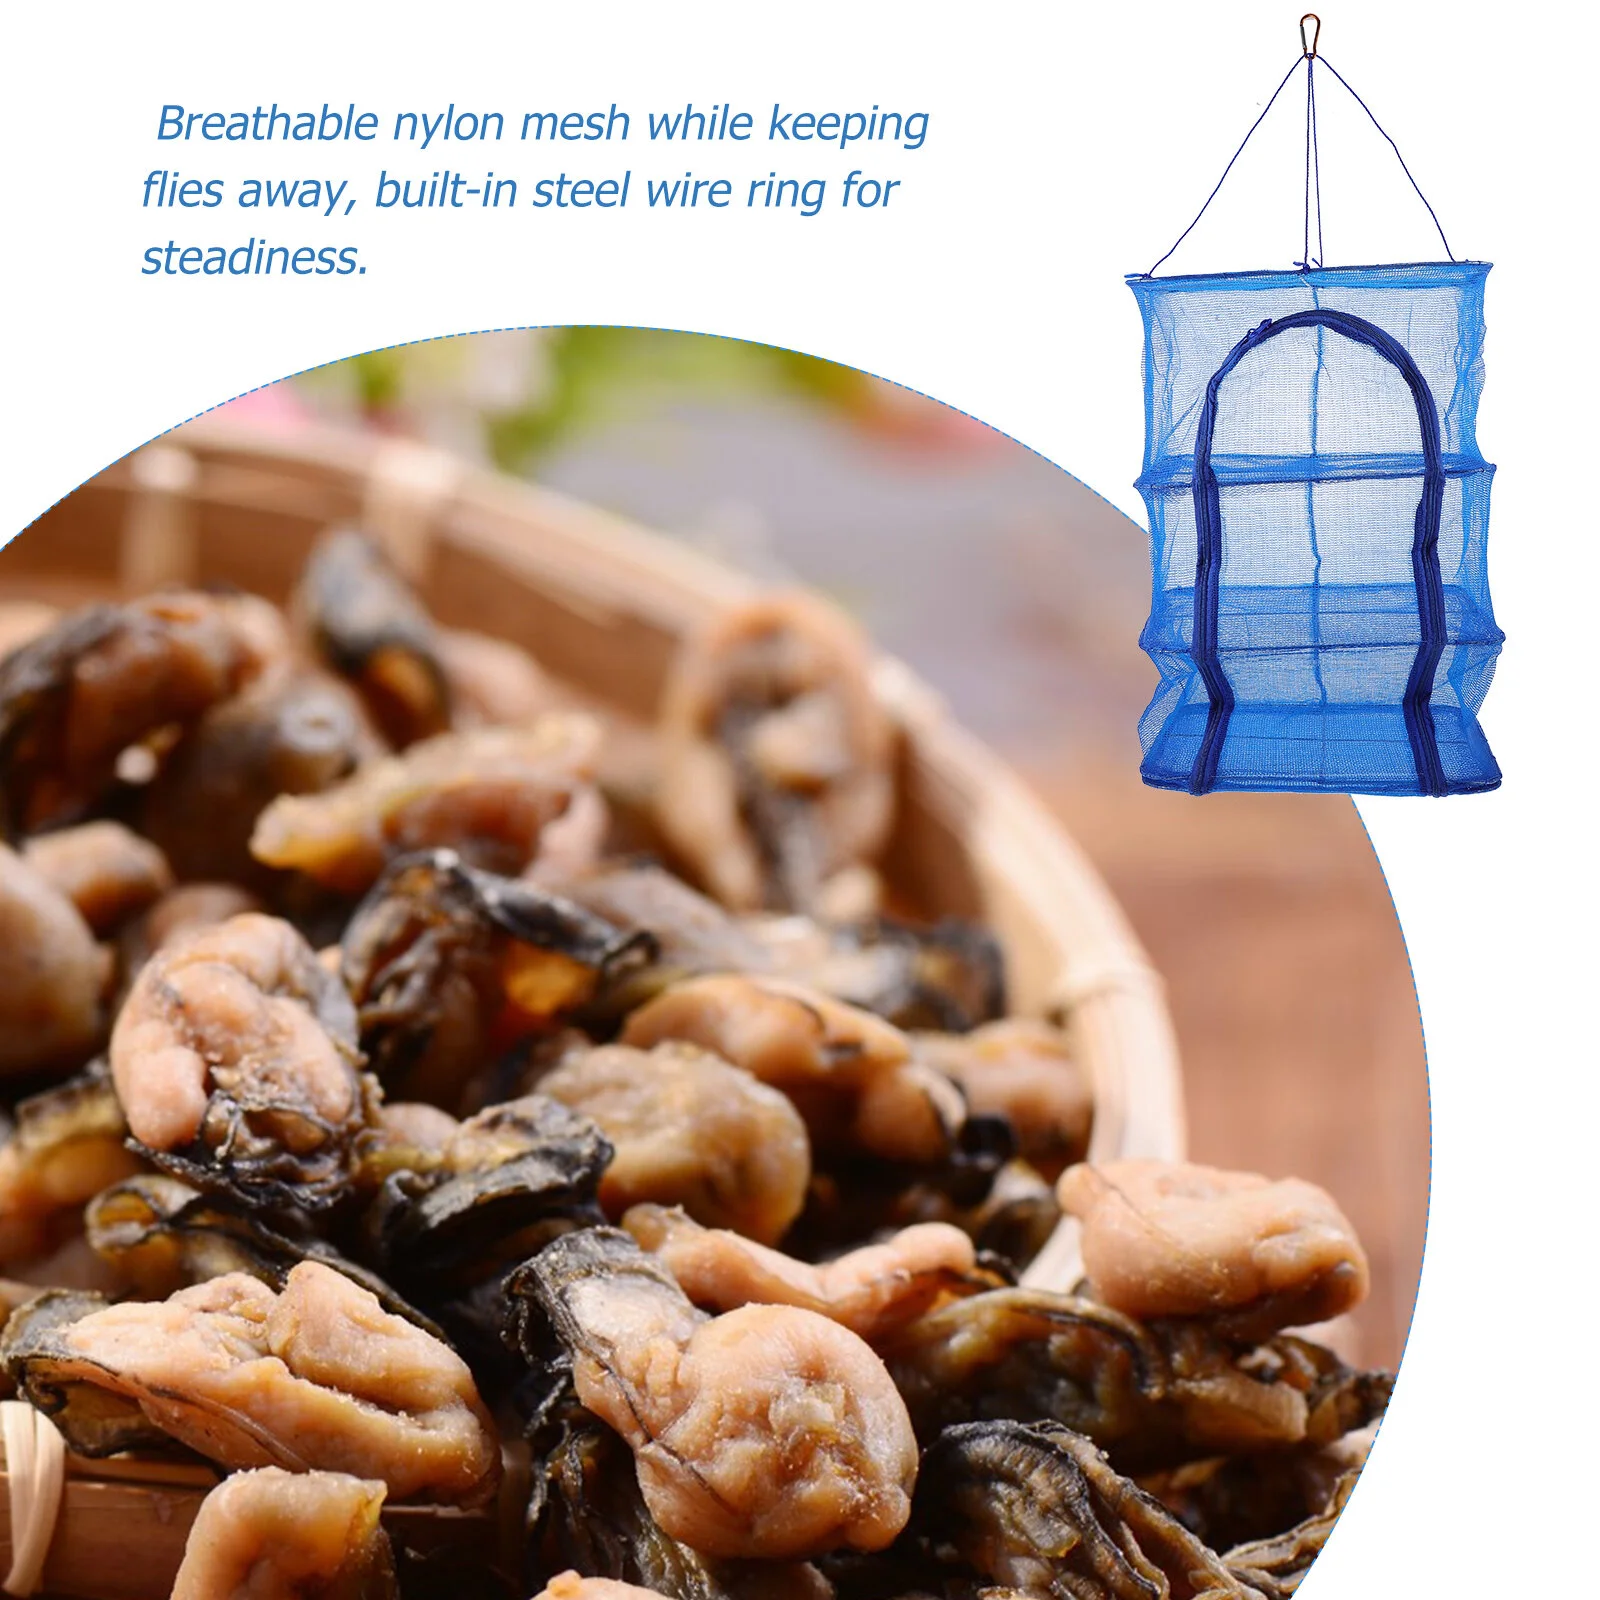 

Складная сетка для сушки продуктов на открытом воздухе, квадратная подвесная сетчатая сушилка для креветок, рыбы, фруктов, овощей